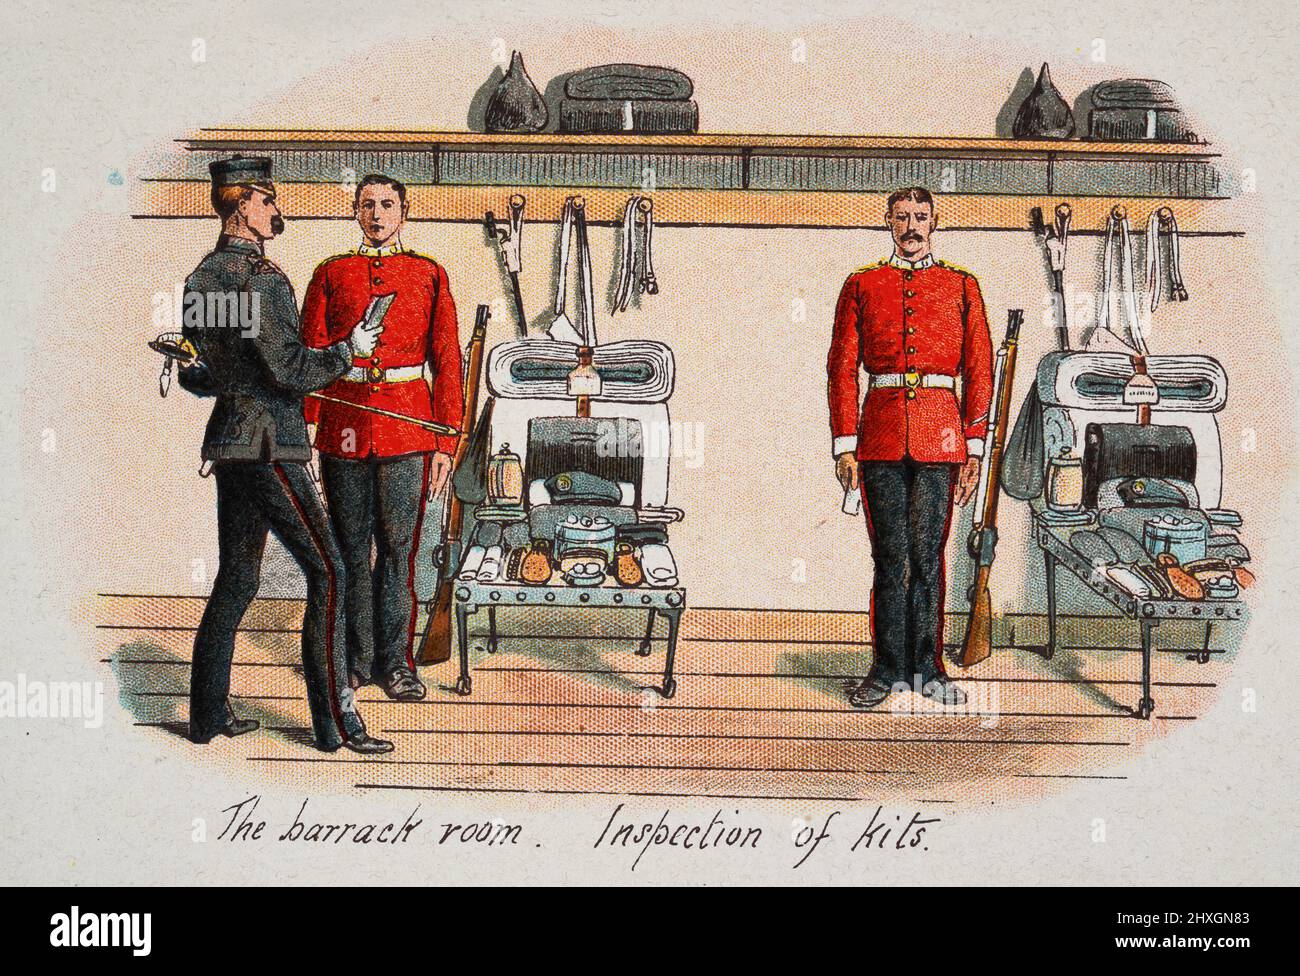 Vintage-Illustration der Baracke, Inspektion von Kits, viktorianisches britisches Militär 19. Jahrhundert Stockfoto